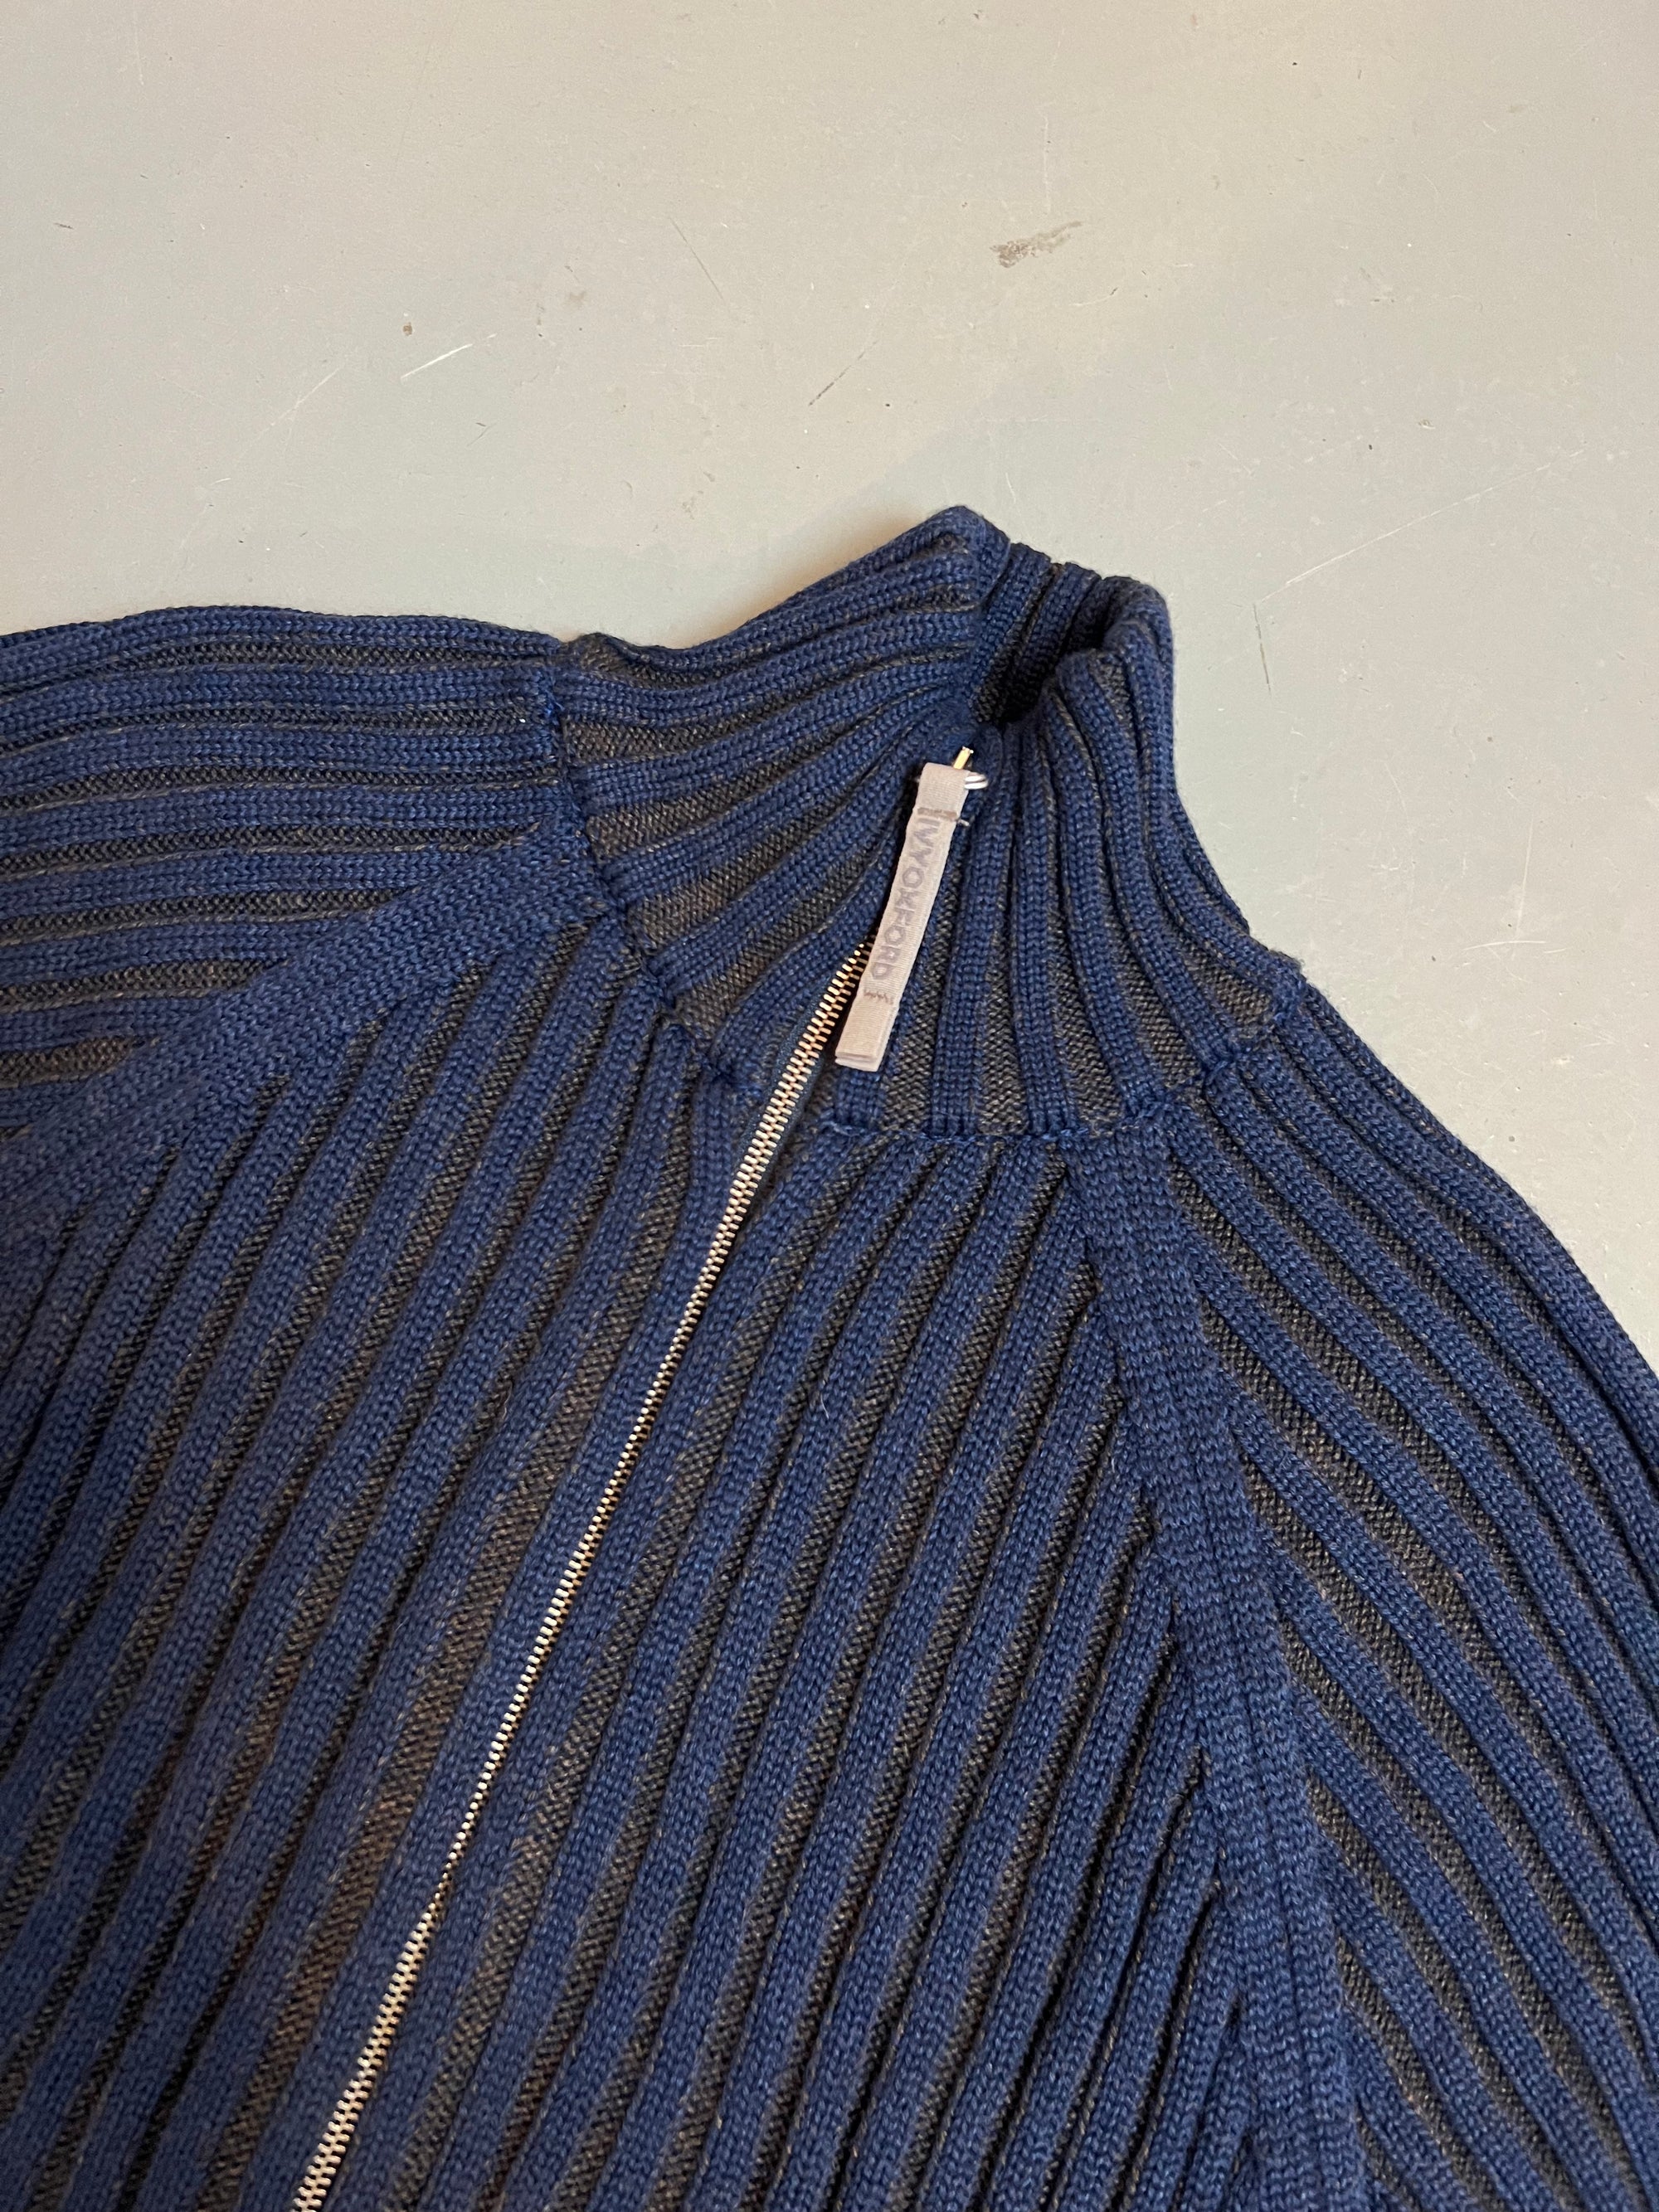 Produkt Bild Vintage Ivy Oxford Knit Zipper L/XL von Kragen